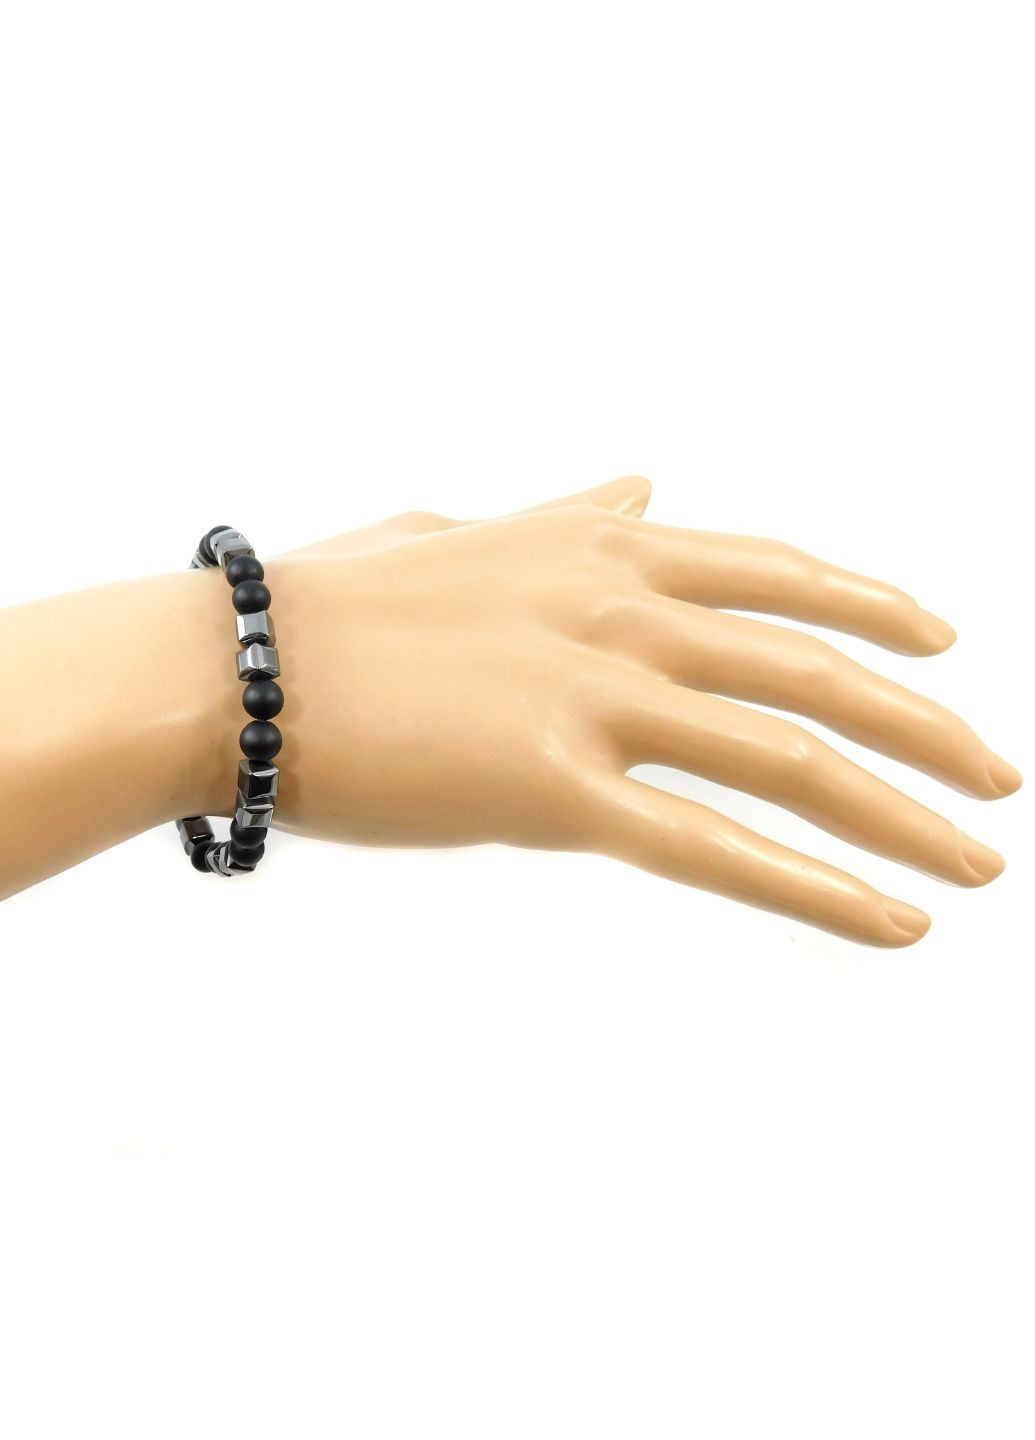 Эксклюзивный браслет Гематит, Шунгит 17 размер, резинка Fursa fashion браслет (254055242)